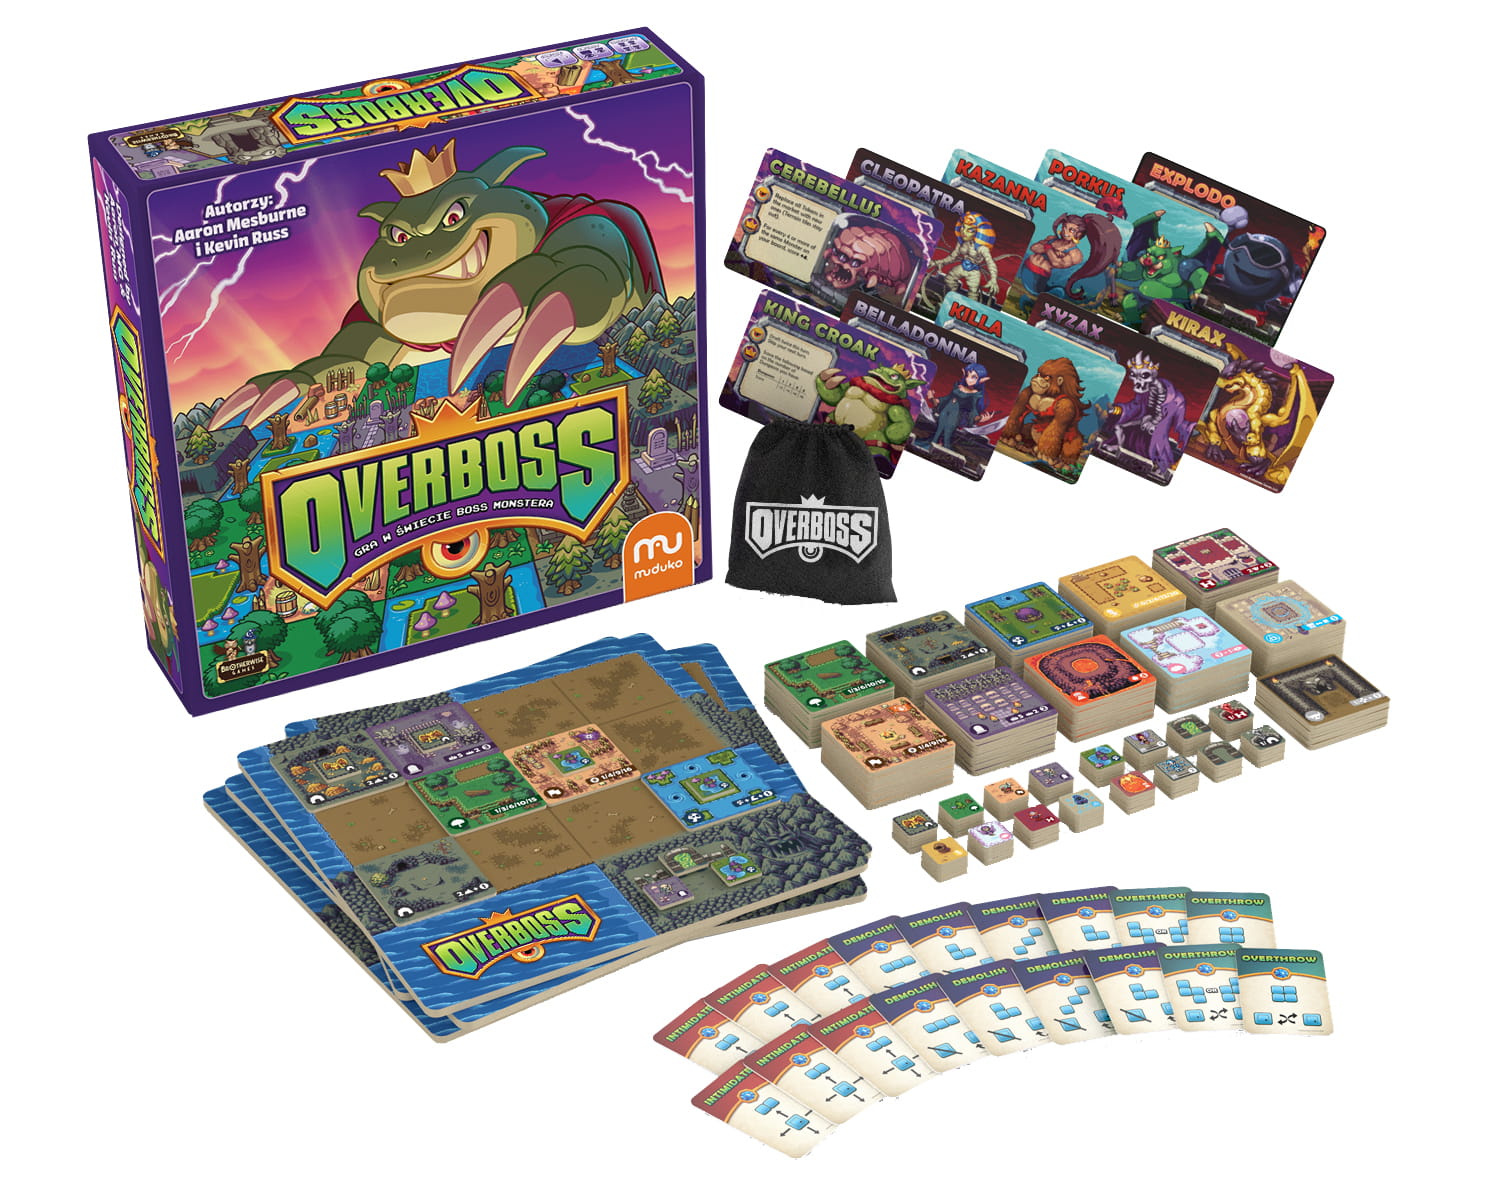 Overboss - gra planszowa wydawnictwa Muduko. Pudełko i jego zawartość.